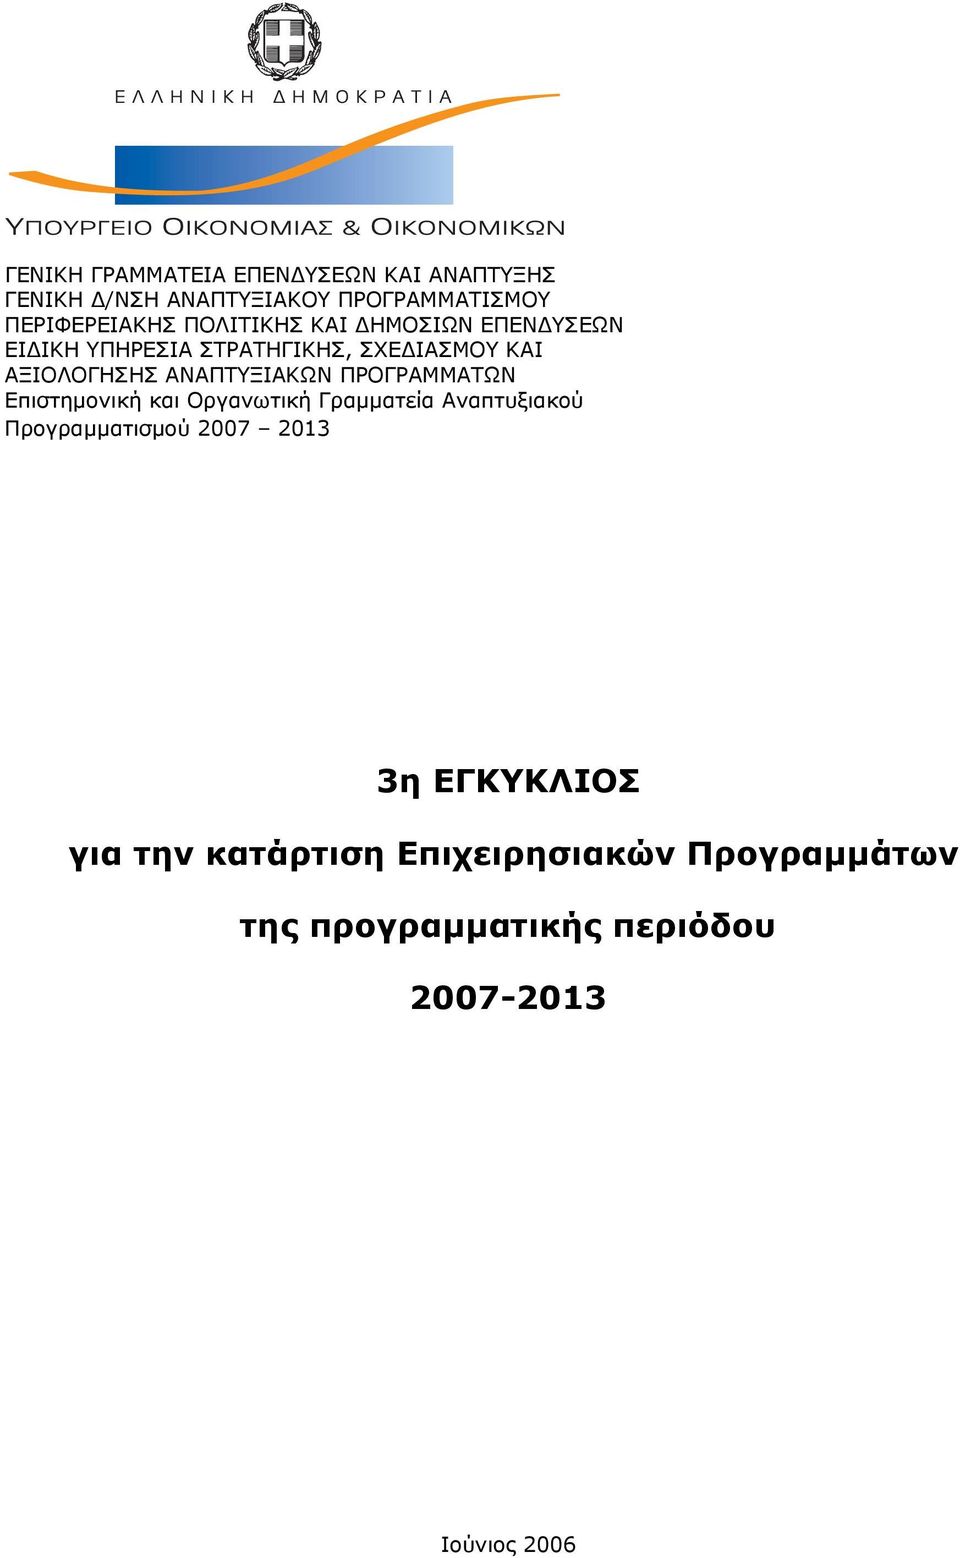 ΑΝΑΠΤΥΞΙΑΚΩΝ ΠΡΟΓΡΑΜΜΑΤΩΝ Επιστημονική και Οργανωτική Γραμματεία Αναπτυξιακού Προγραμματισμού 2007